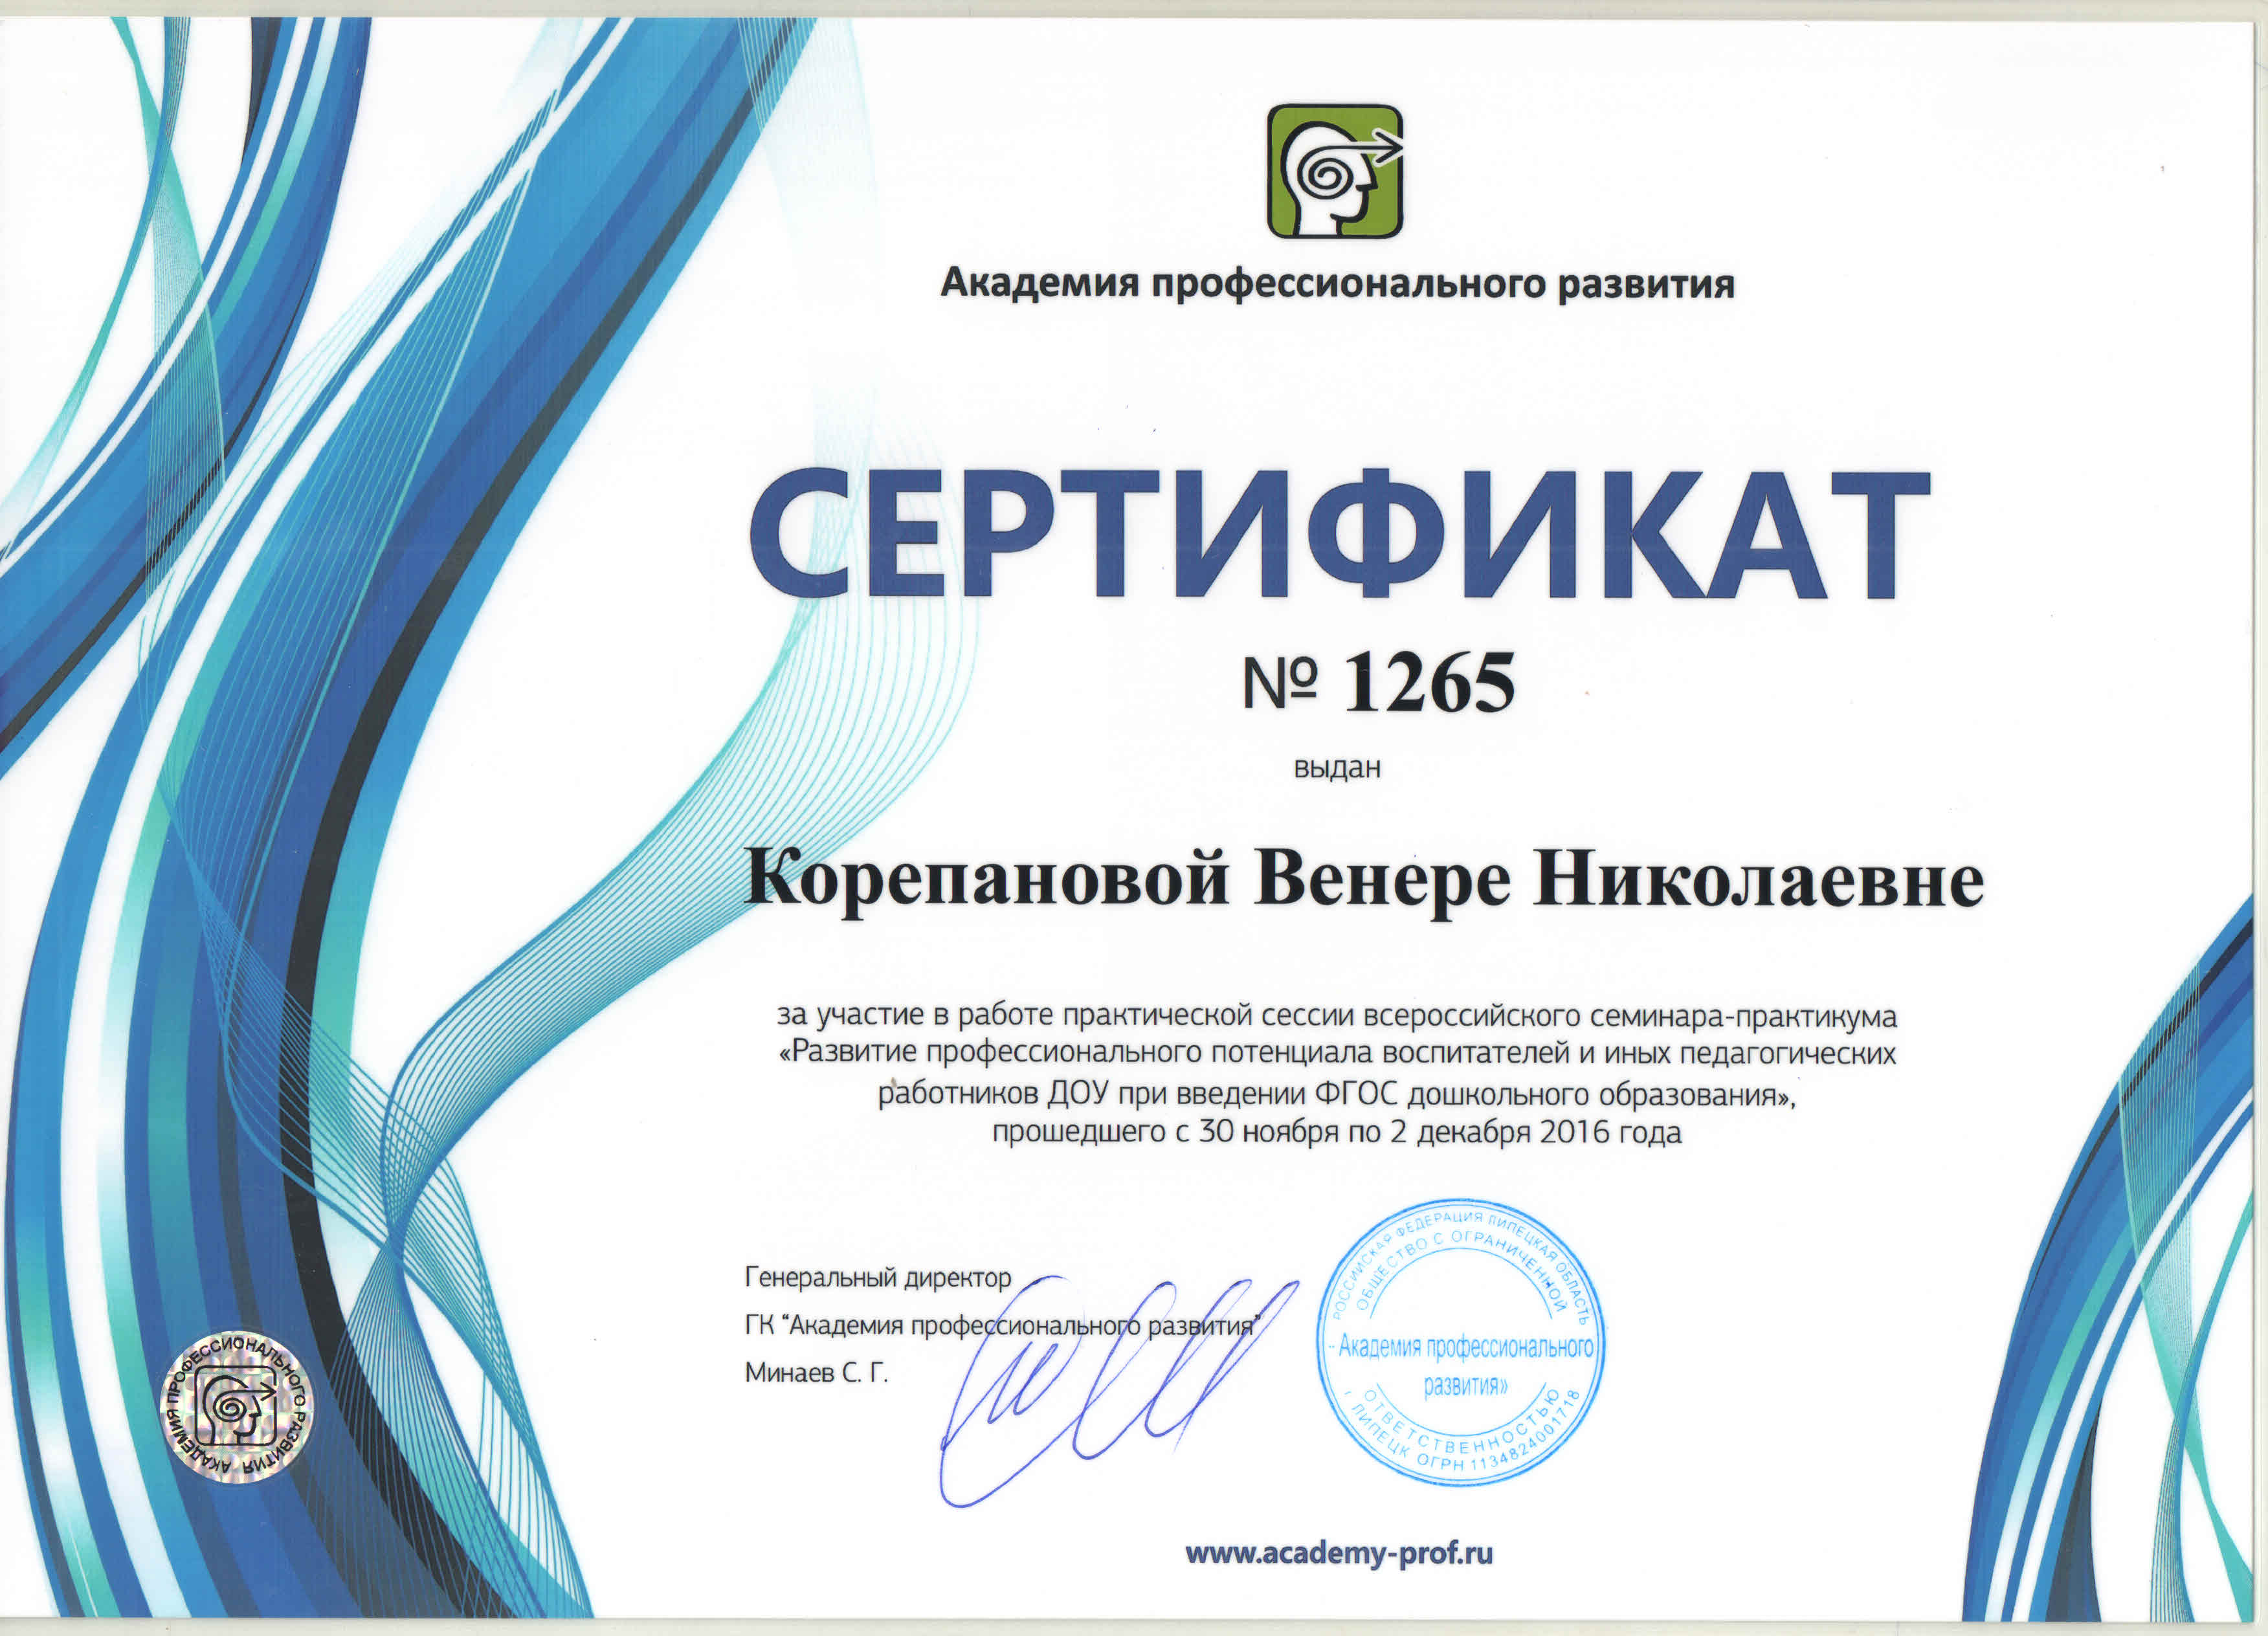 Сертификат за участие в конференции